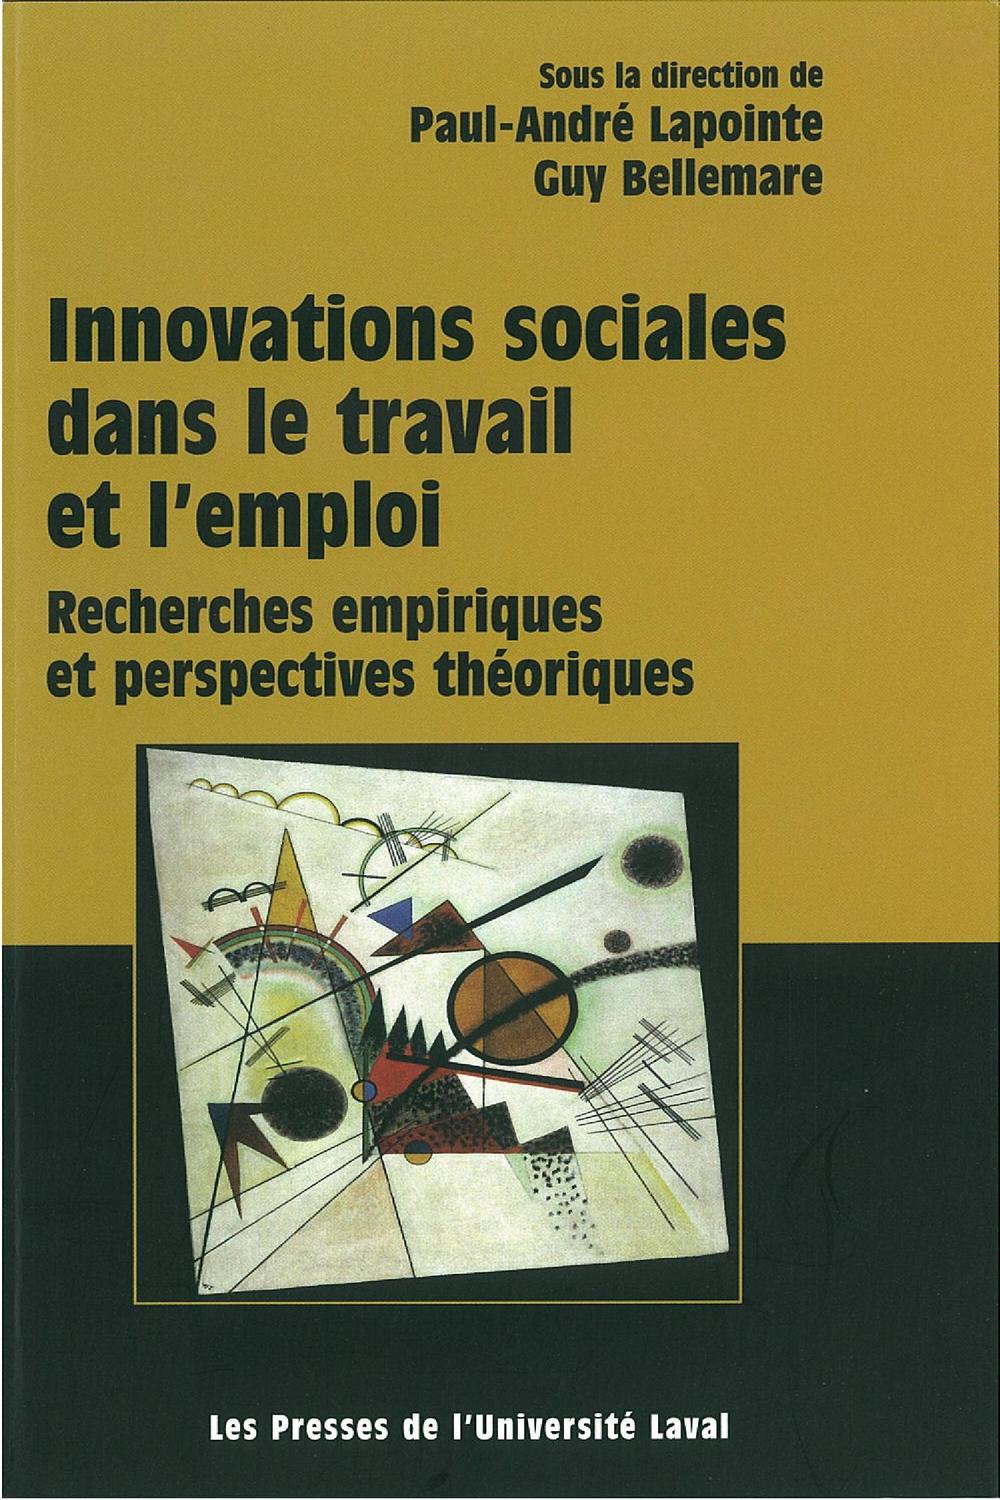 Innovations sociales dans le travail et l'emploi - Guy Bellemare